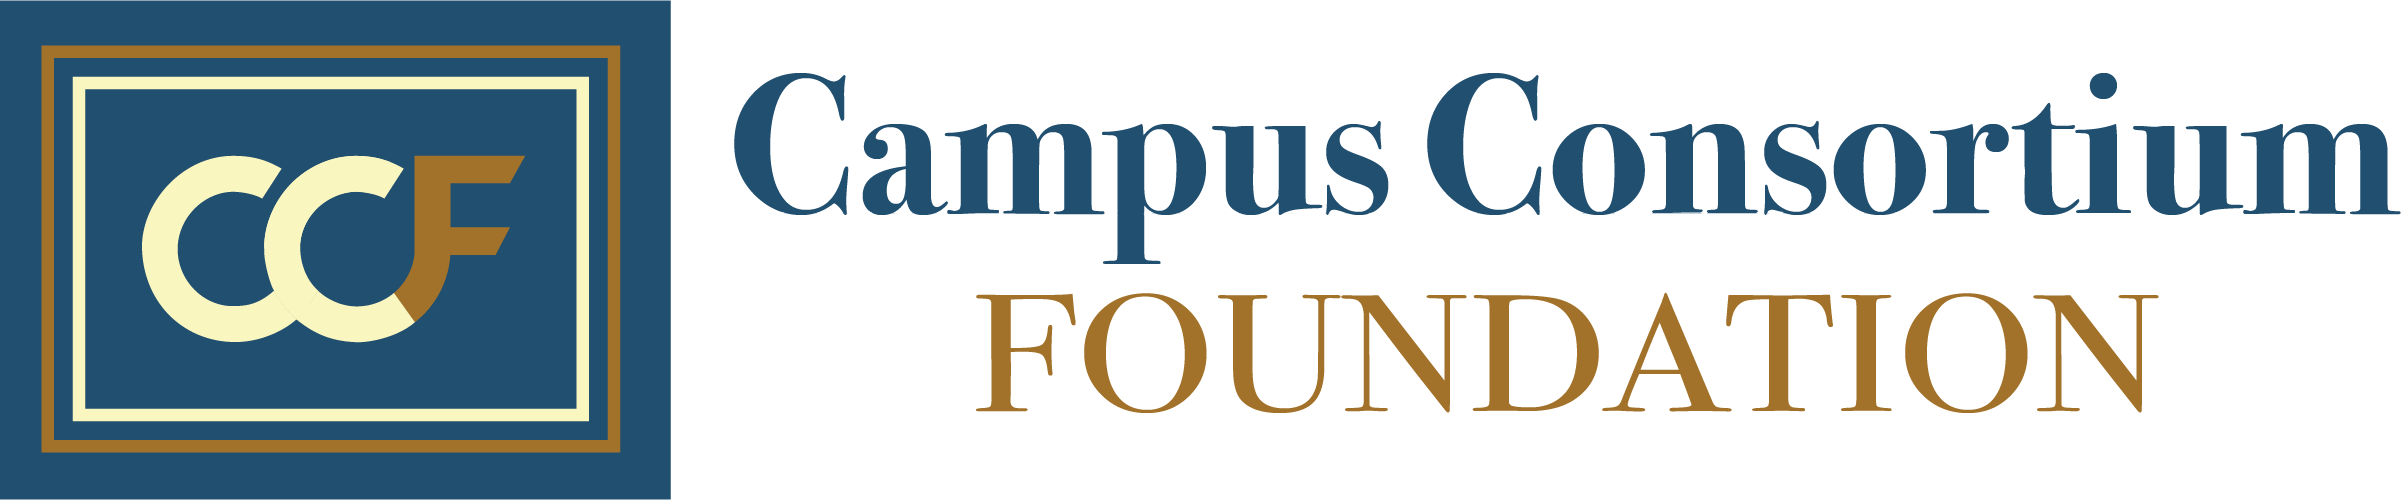 Campus Consortium Foundation